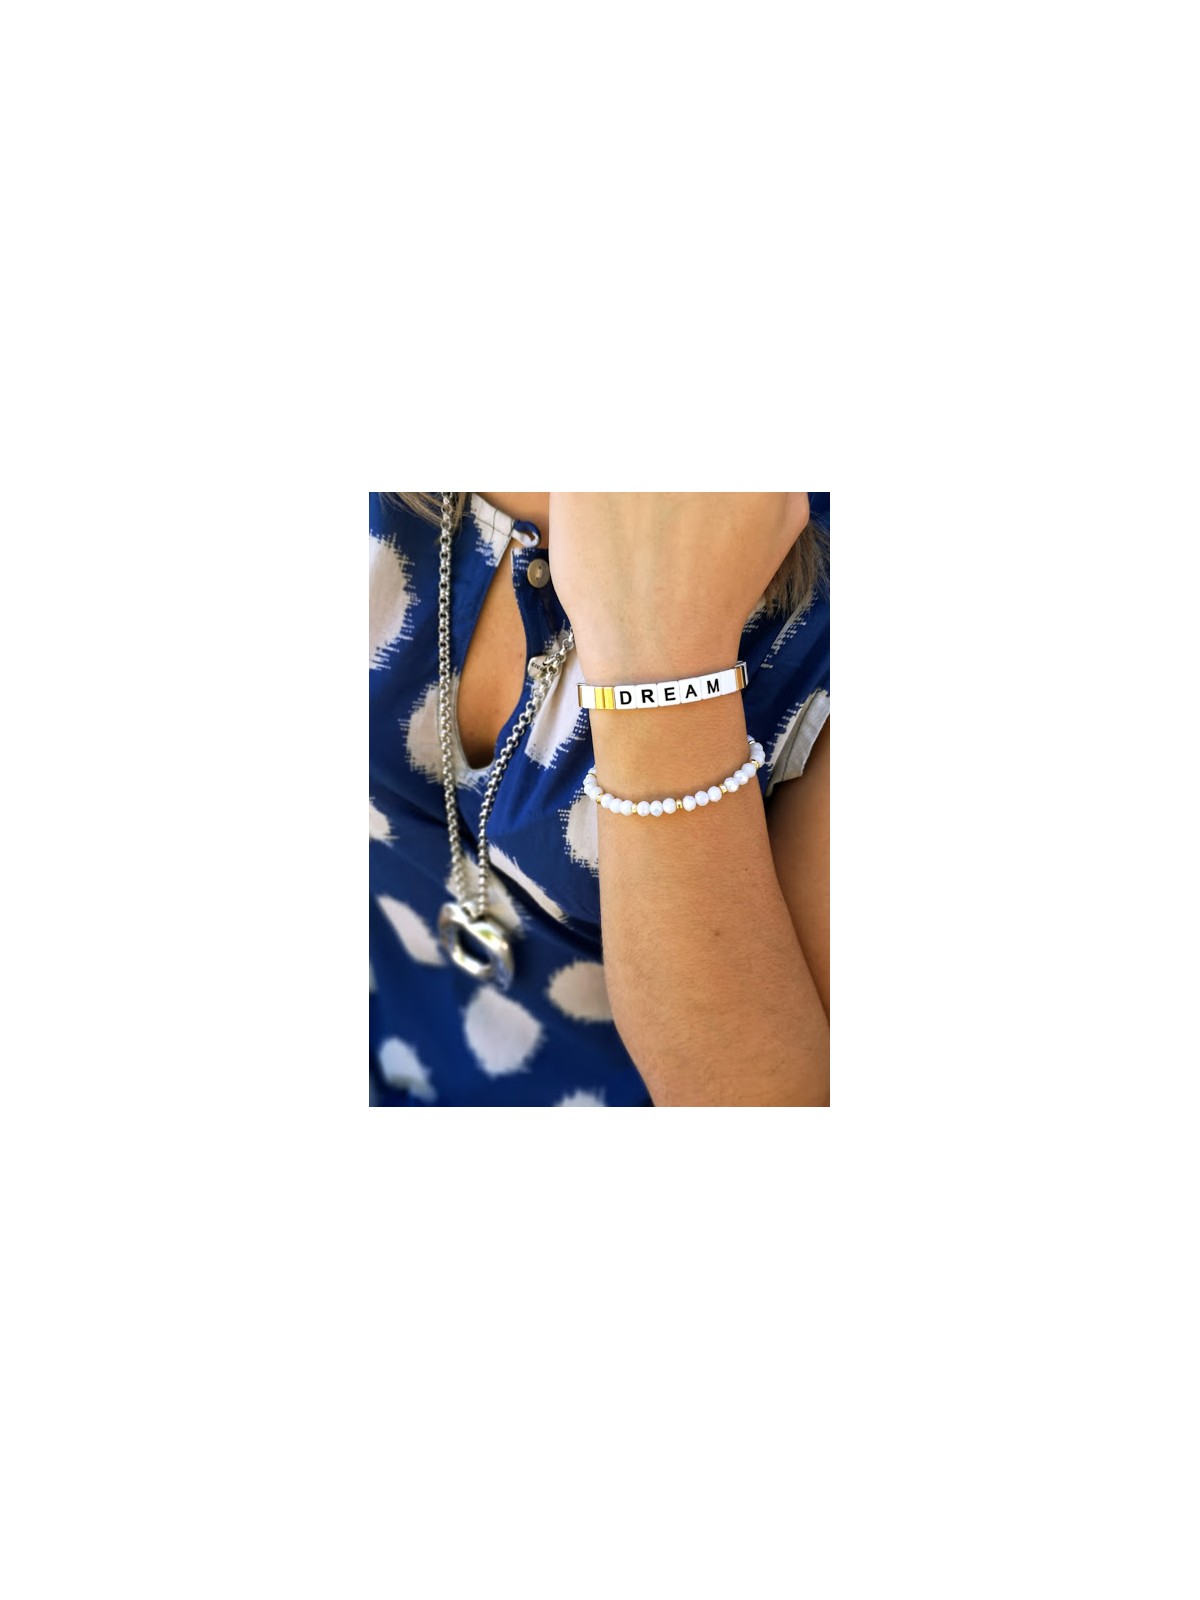 Bracelet dream perles carrees or blanc noir | 1 vue portée | Tilleulmenthe boutique de mode femme en ligne